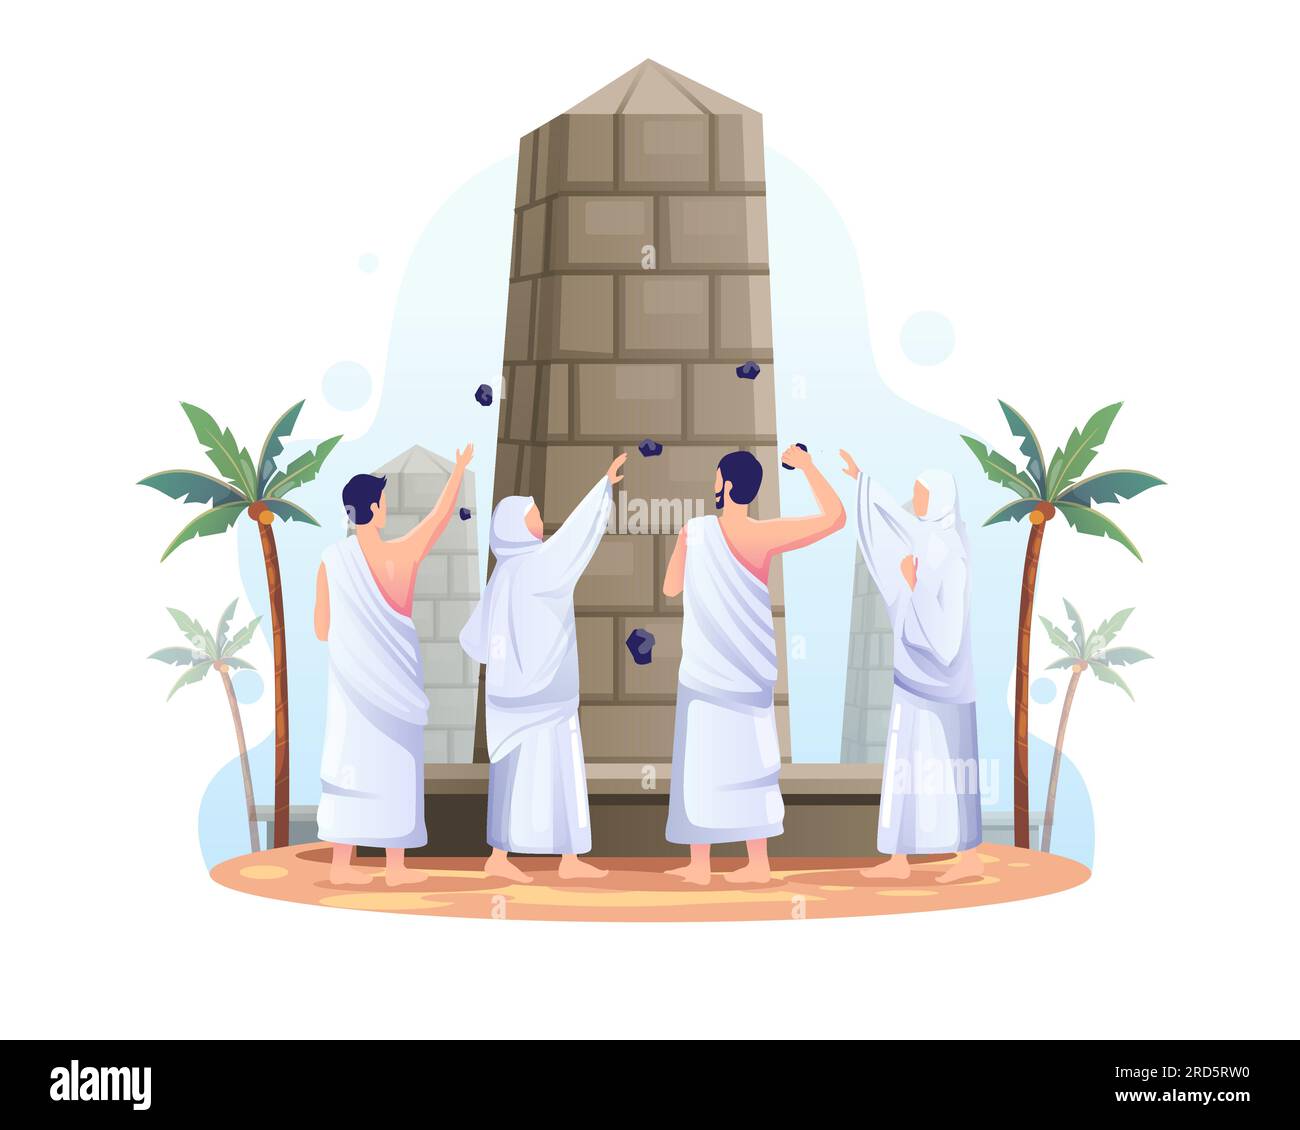 Les musulmans jettent des pierres sur le pilier du diable dans le pèlerinage islamique du hadj. Illustration vectorielle plate Illustration de Vecteur